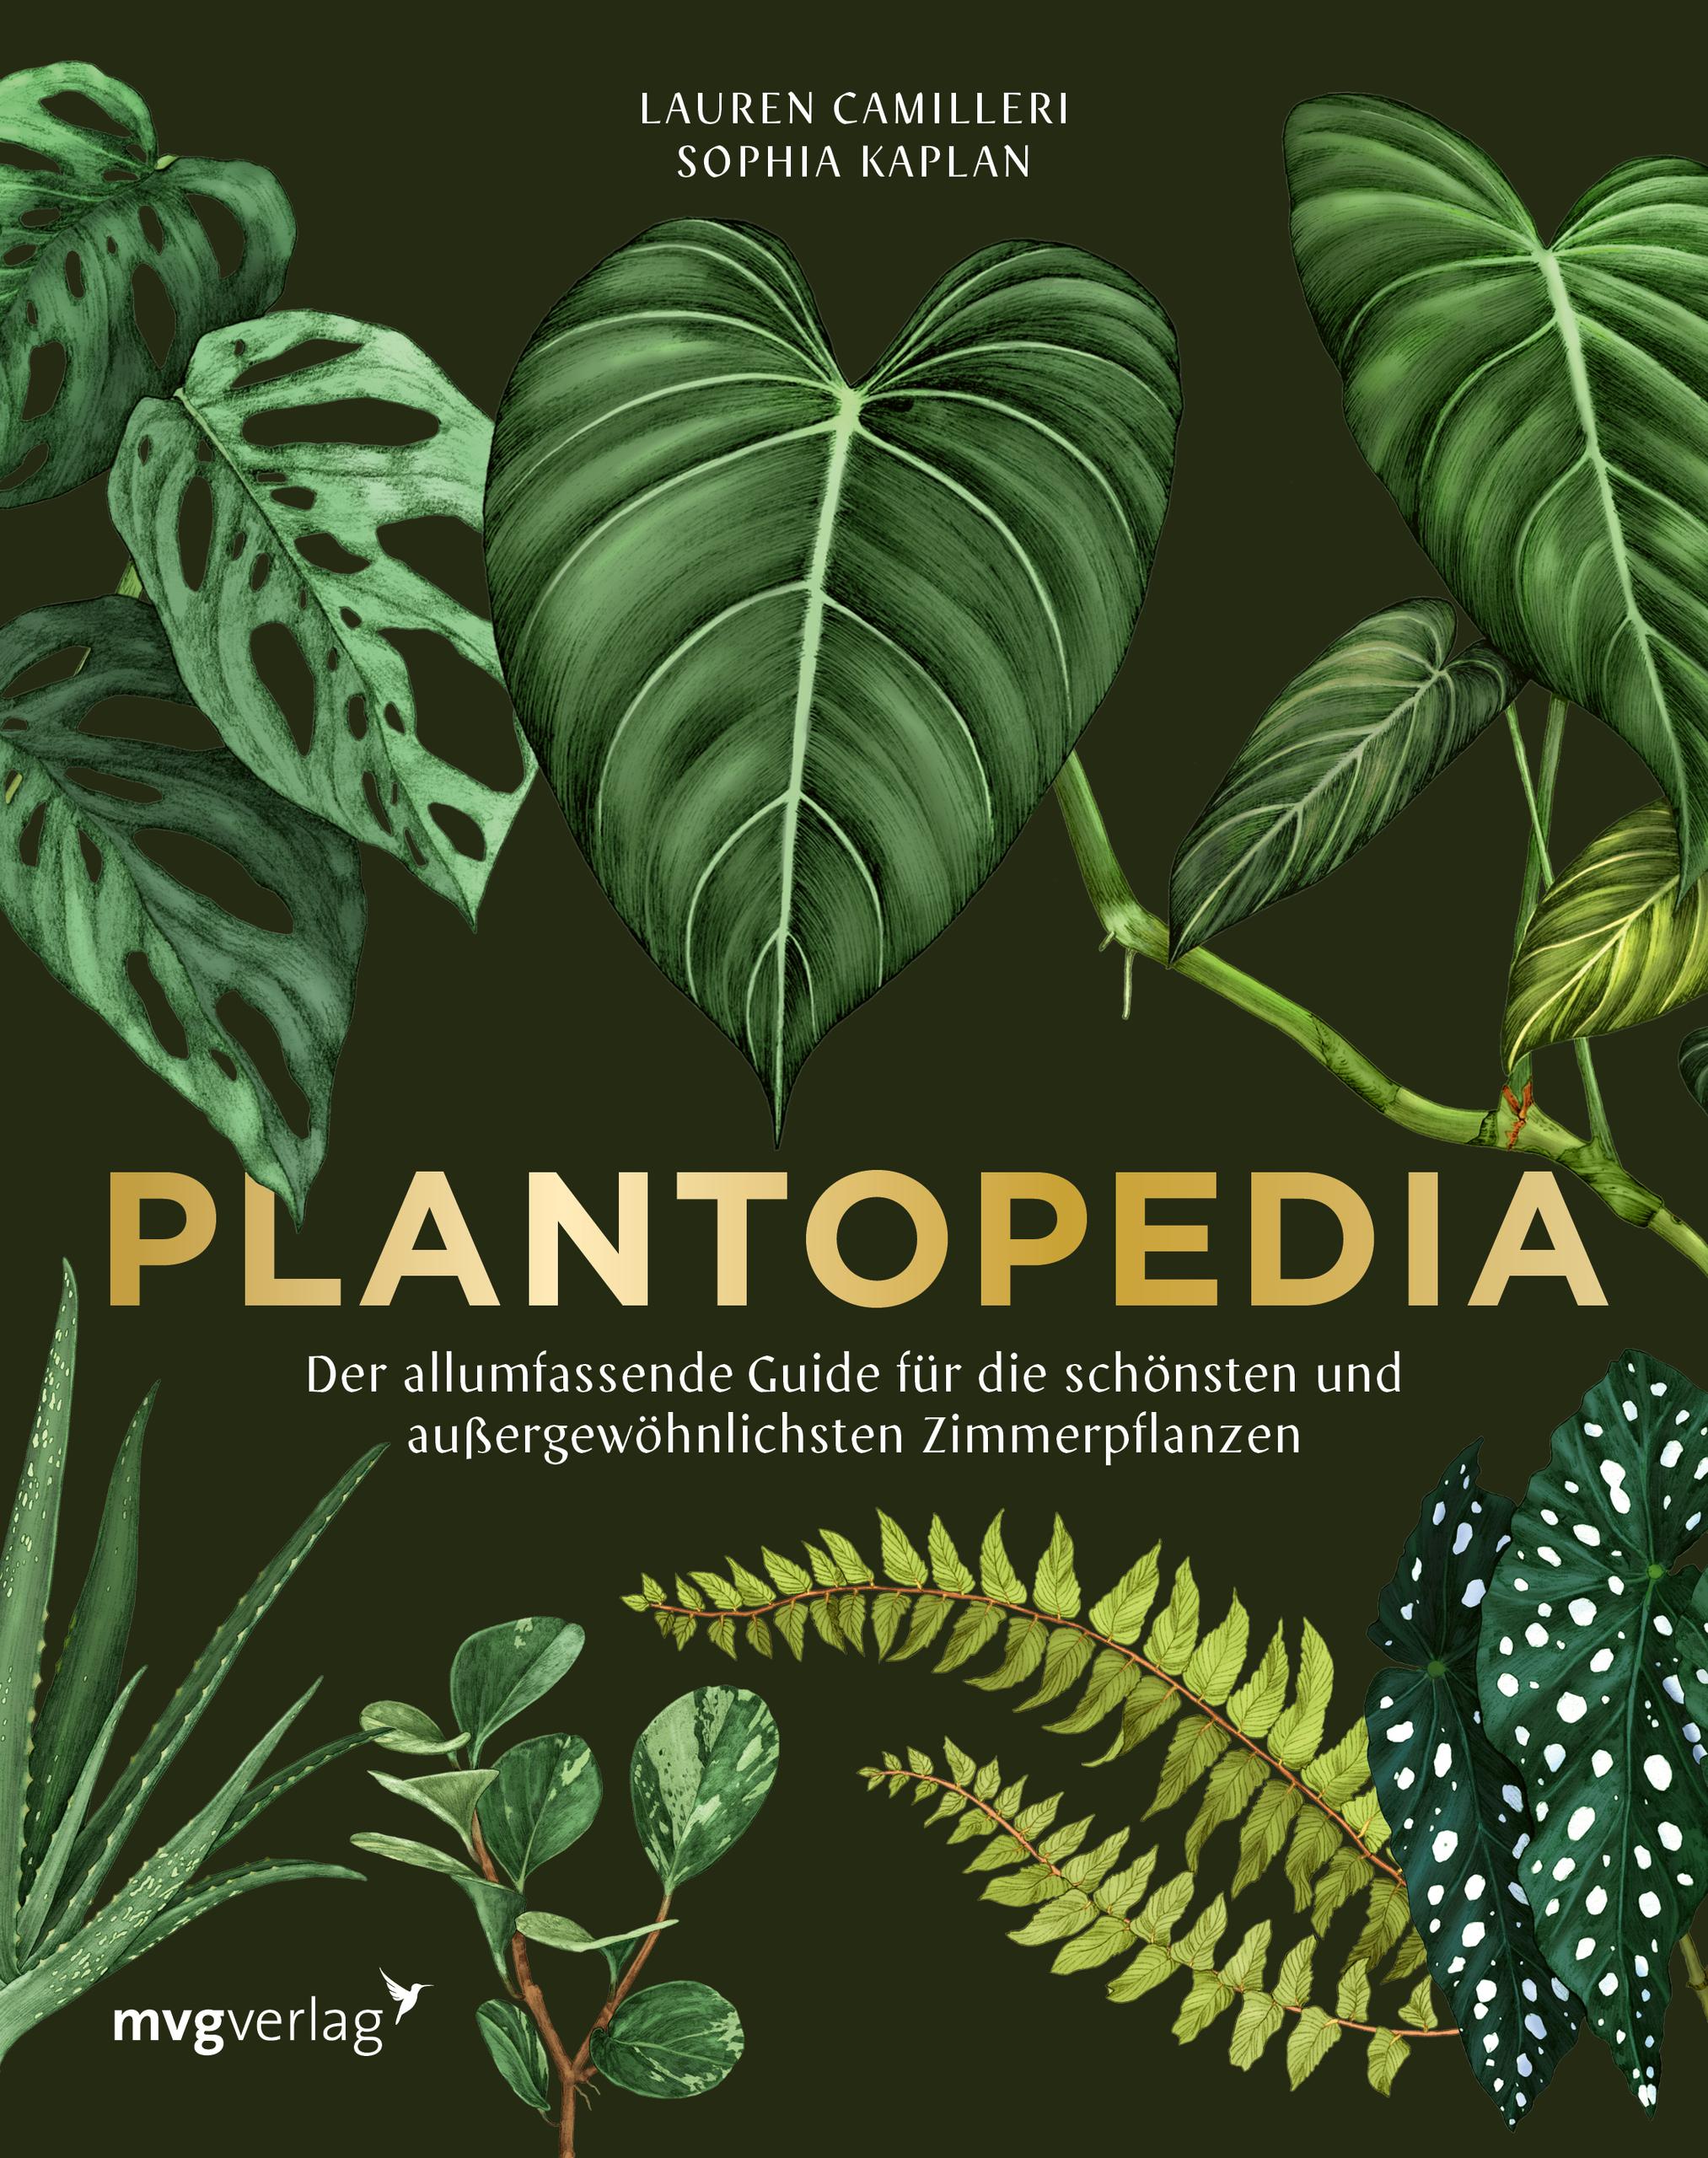 Plantopedia Der allumfassende Guide für die schönsten und außergewöhnlichsten Zimmerpflanzen. Alles, was du zum Pflegen und Lieben deiner Pflanzen wissen musst